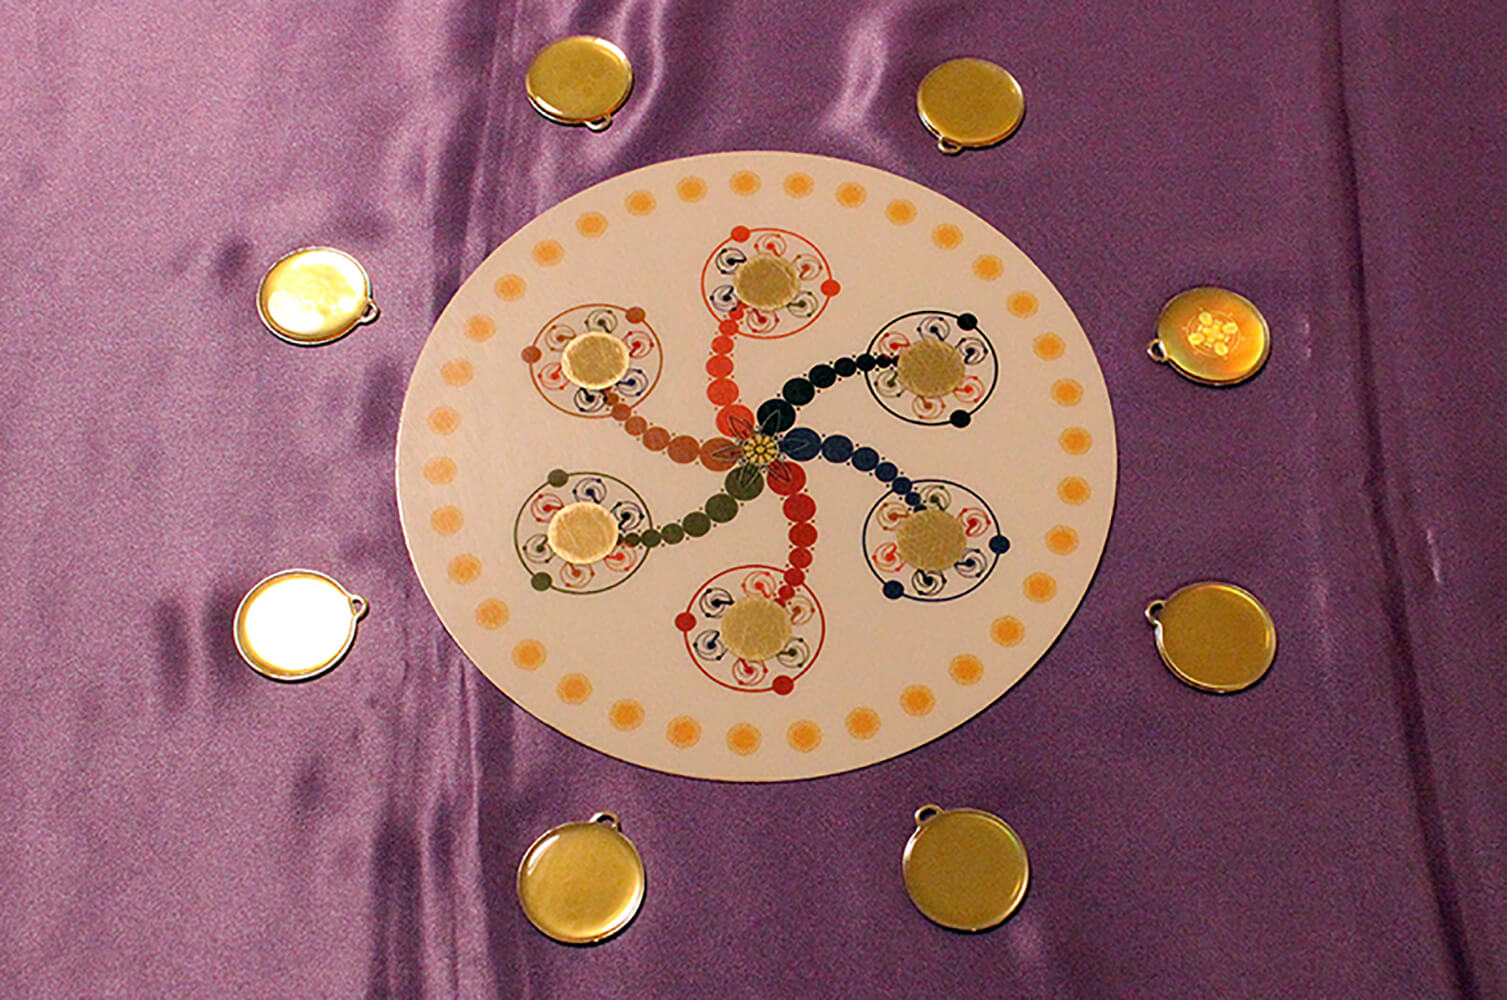 innerwise Amulette um flow maker drapiert auf lila Hintergrund